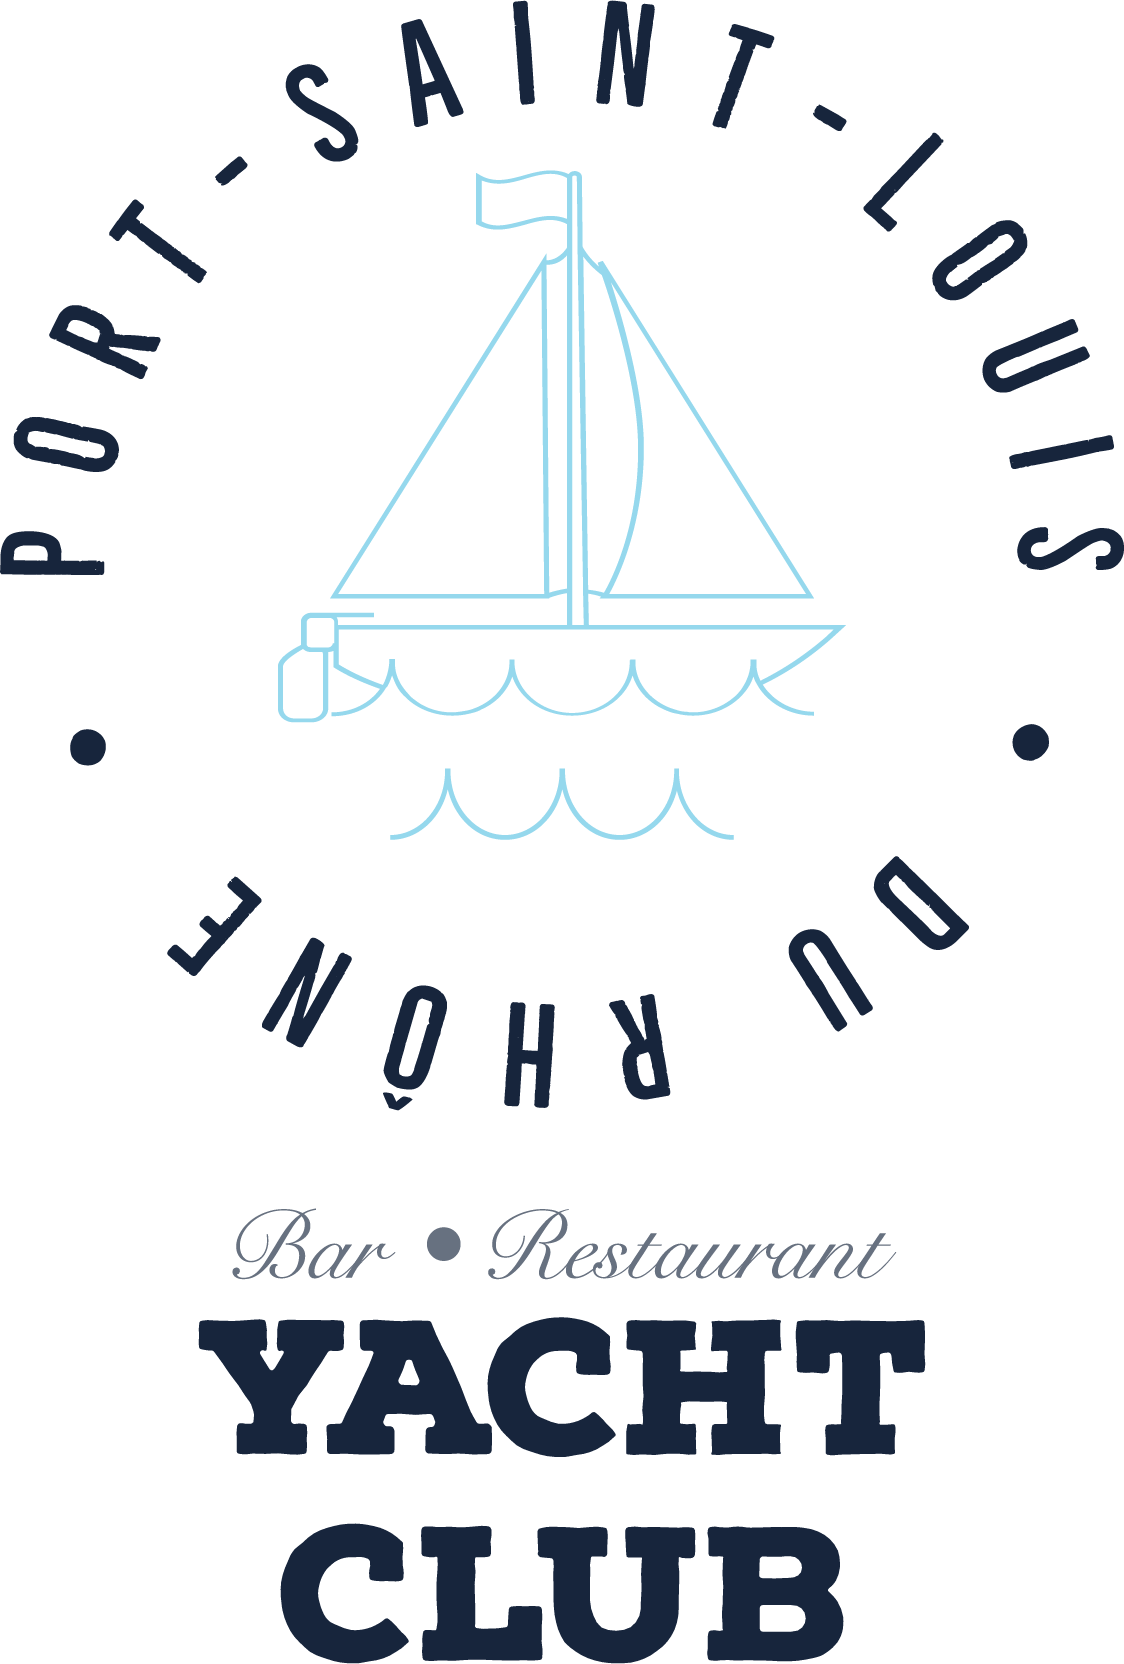 Adresse - Horaires - Téléphone - Yacht Club - Restaurant Port-Saint-Louis-du-Rhône